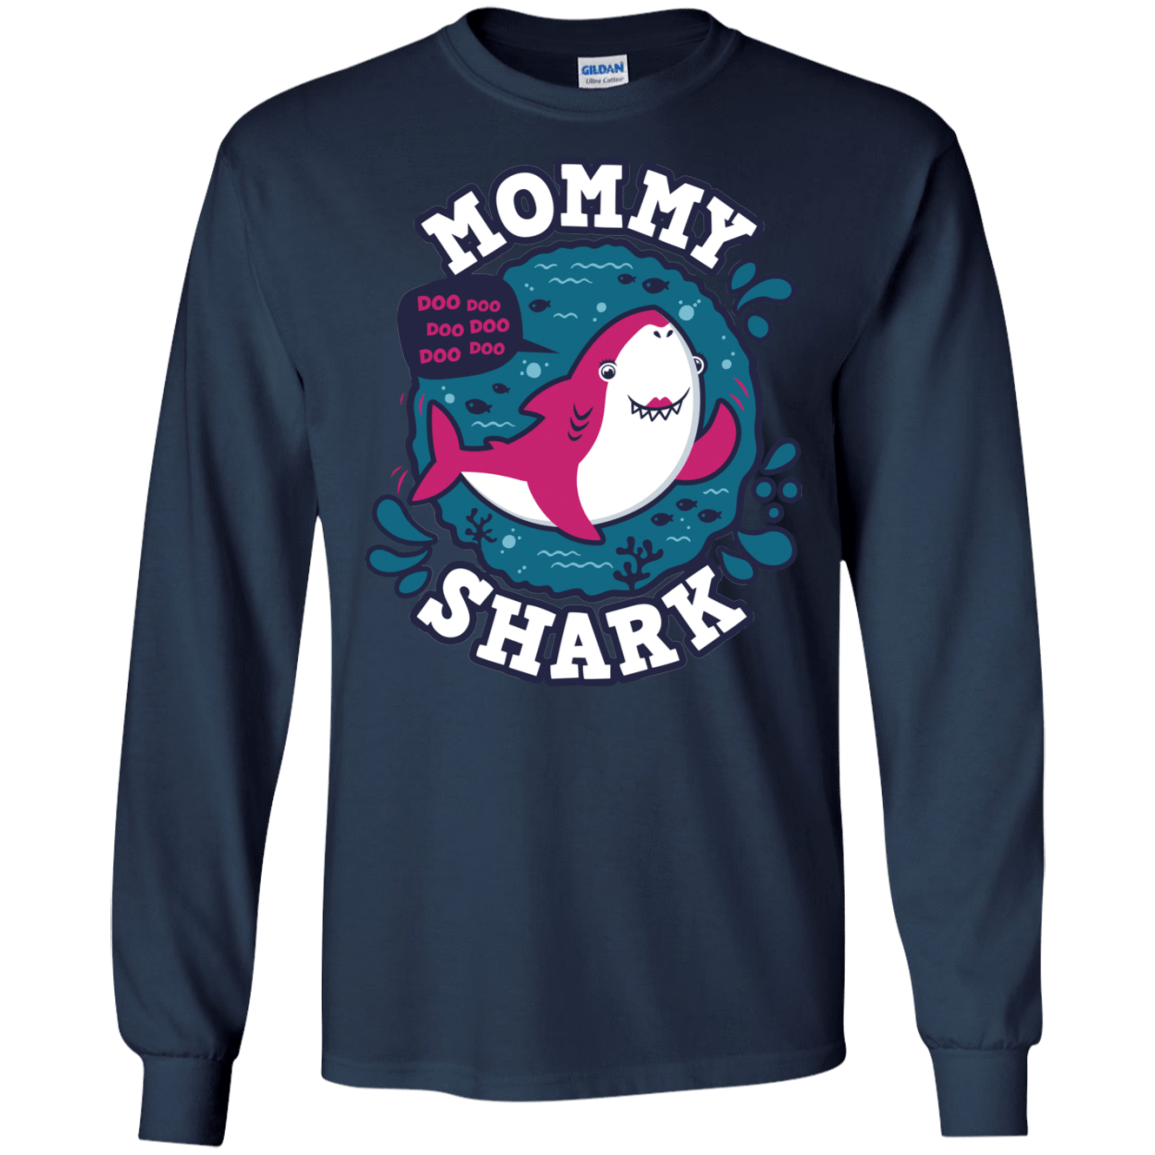 T-Shirts Navy / S Shark Family trazo - Mommy Men's Long Sleeve T-Shirt